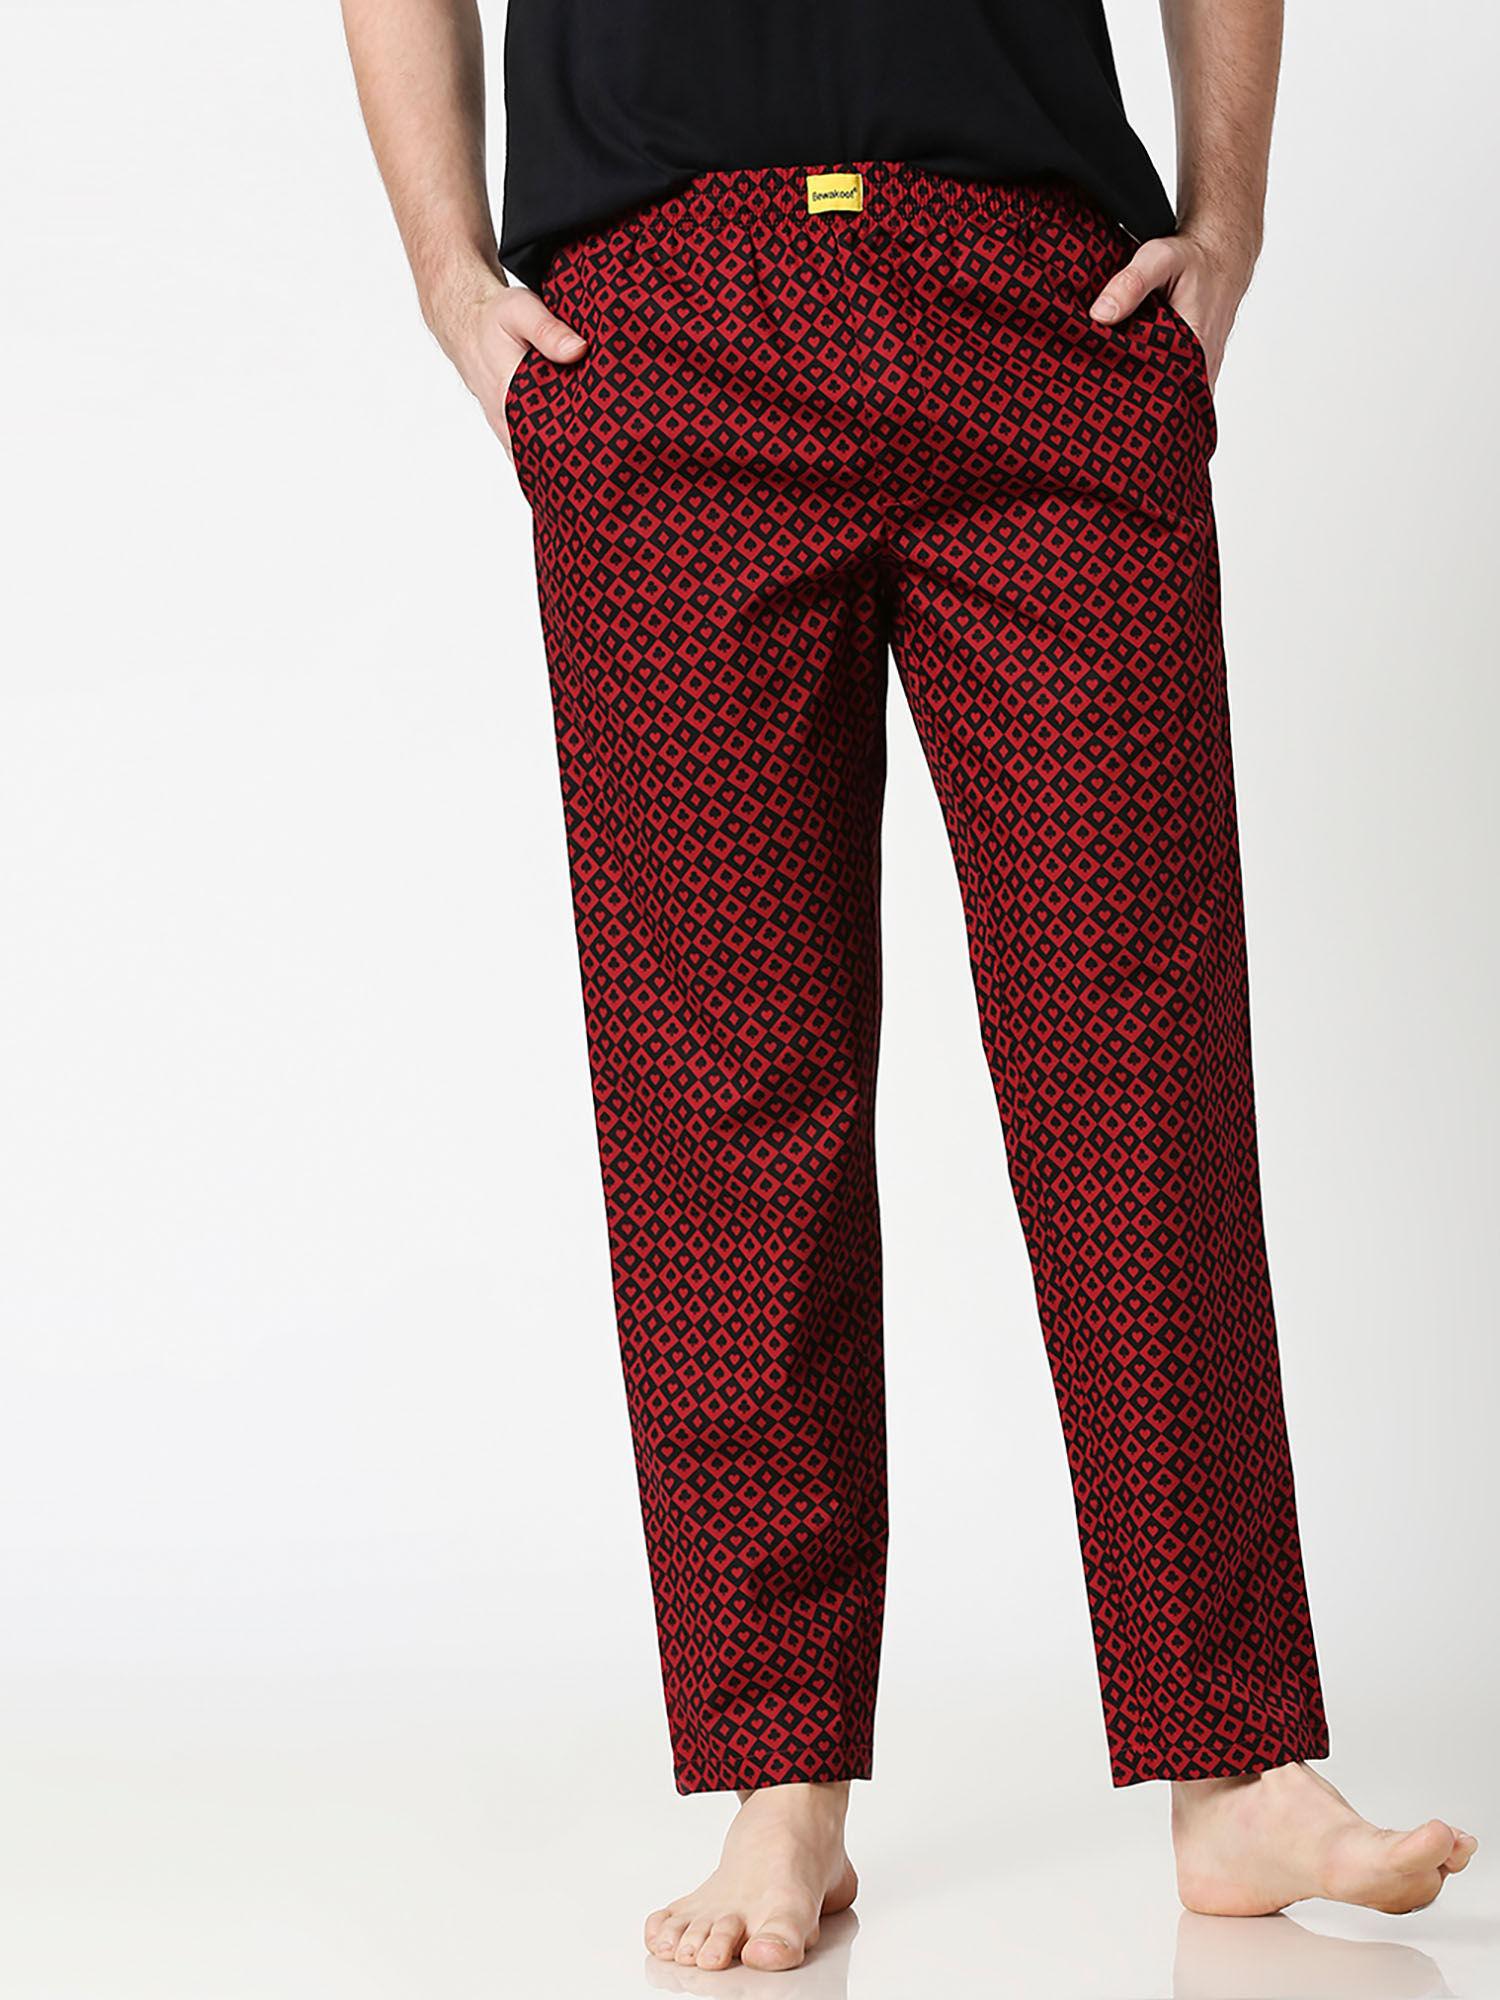 mens red printed pyjama